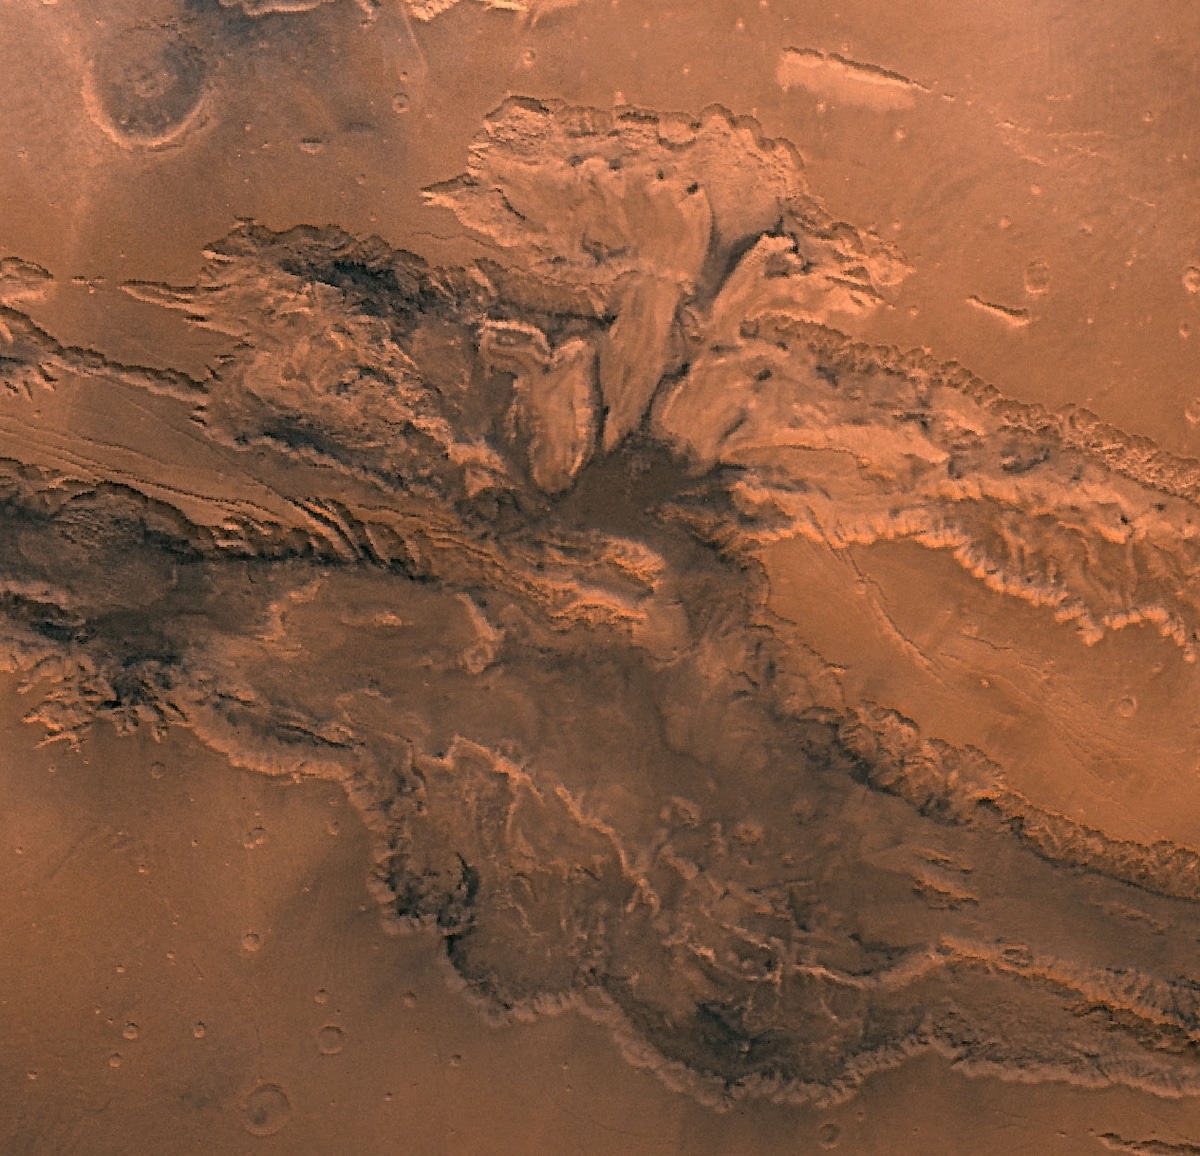 Valles Marineris on Mars - NASA Photo